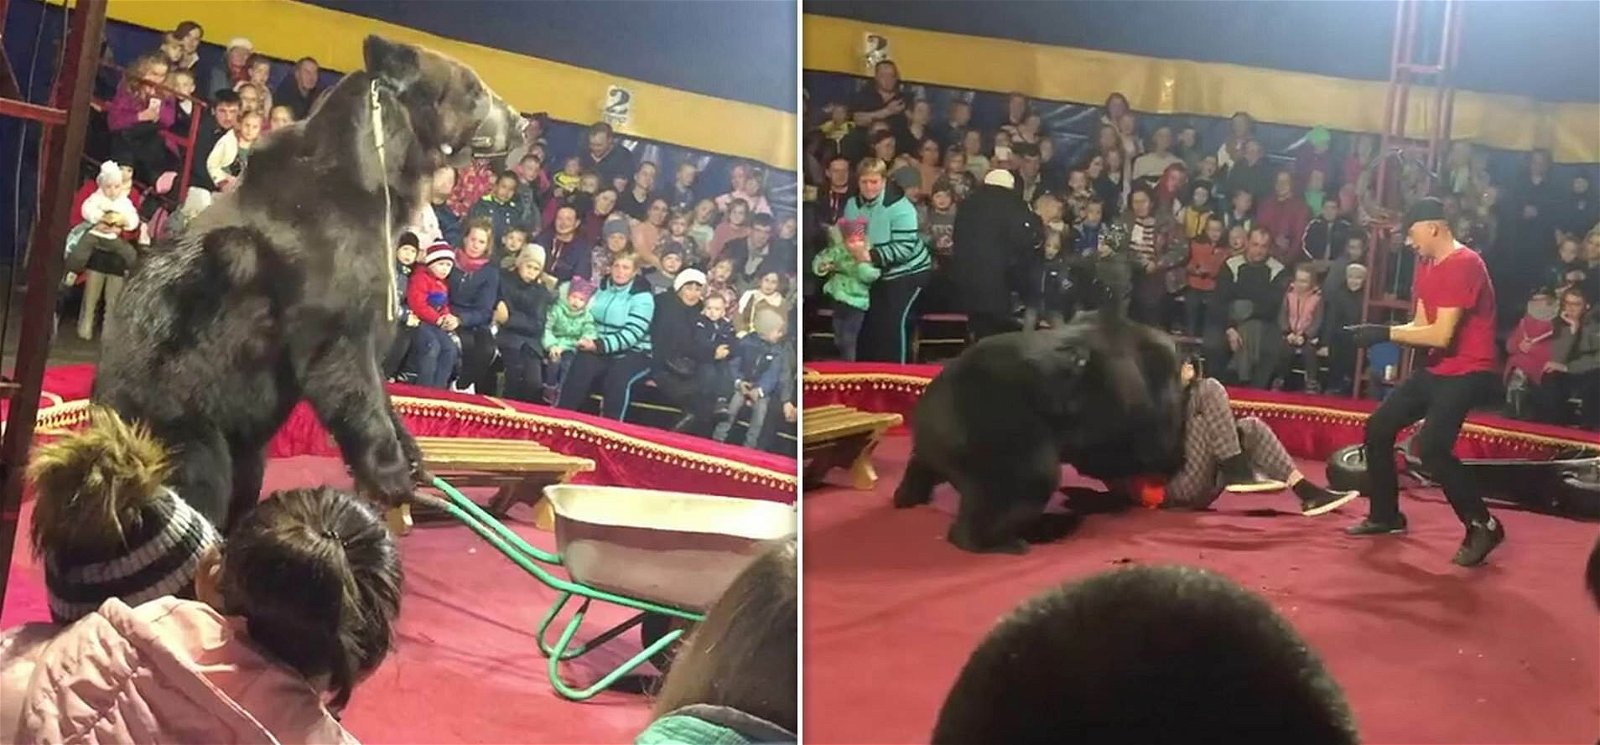 Előadás közben támadta meg idomárját a hatalmas medve – videó